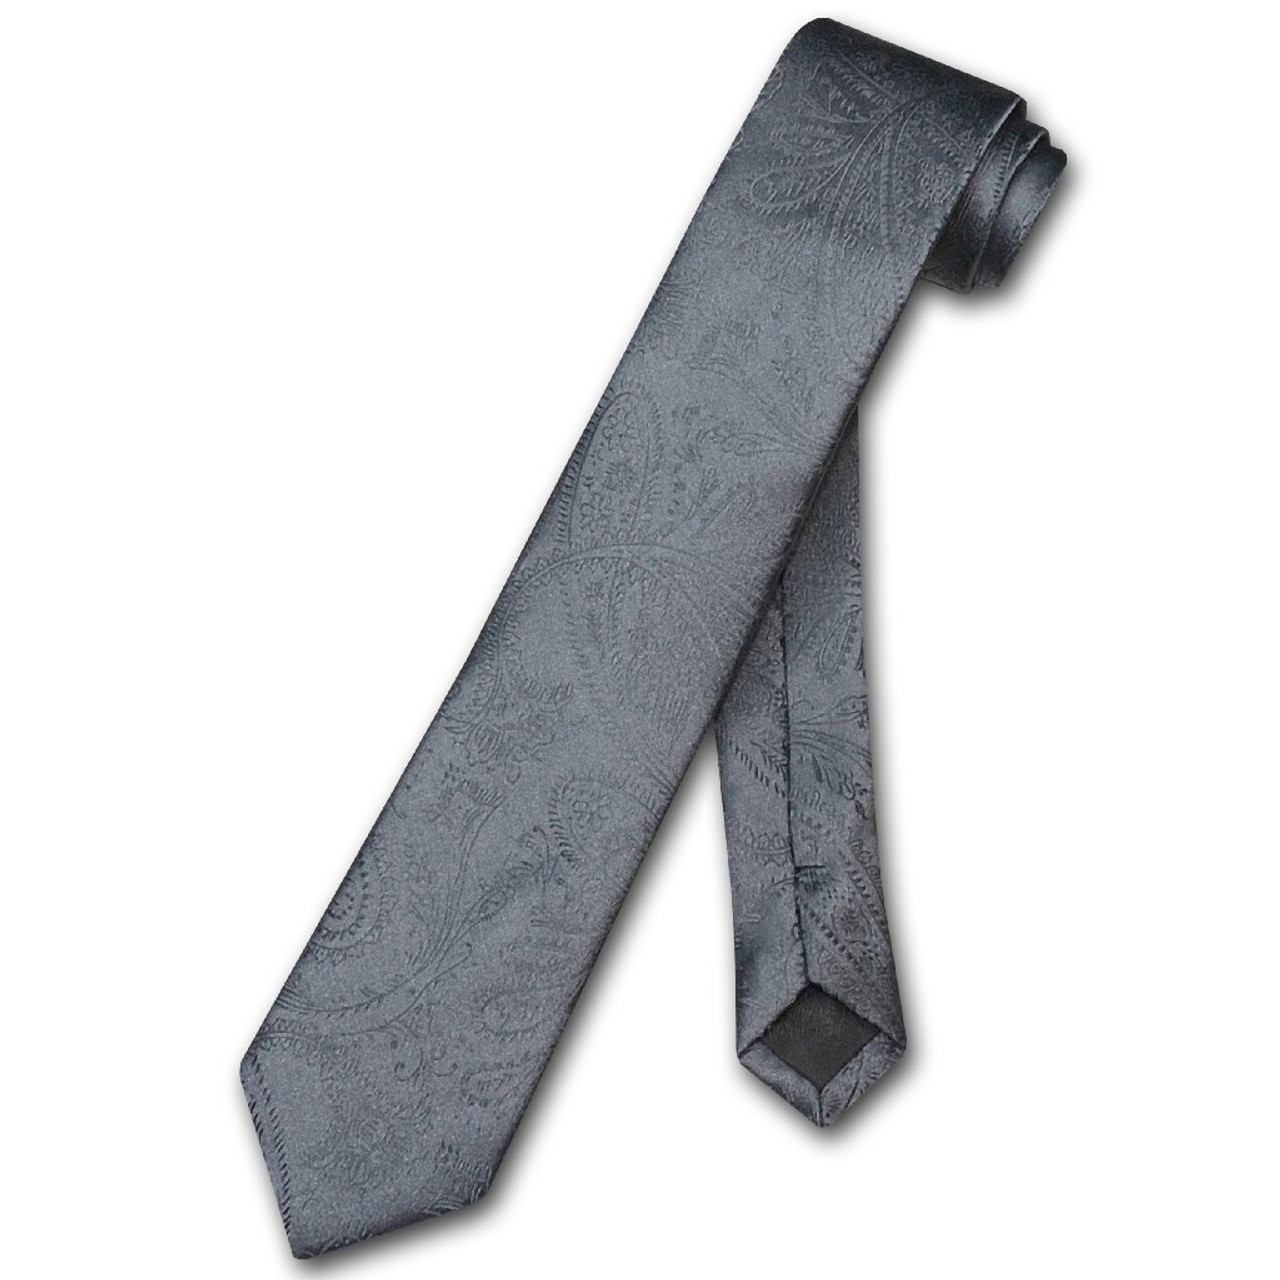 Vesuvio Napoli Narrow NeckTie Solid Charcoal Grey Paisley Skinny Tie